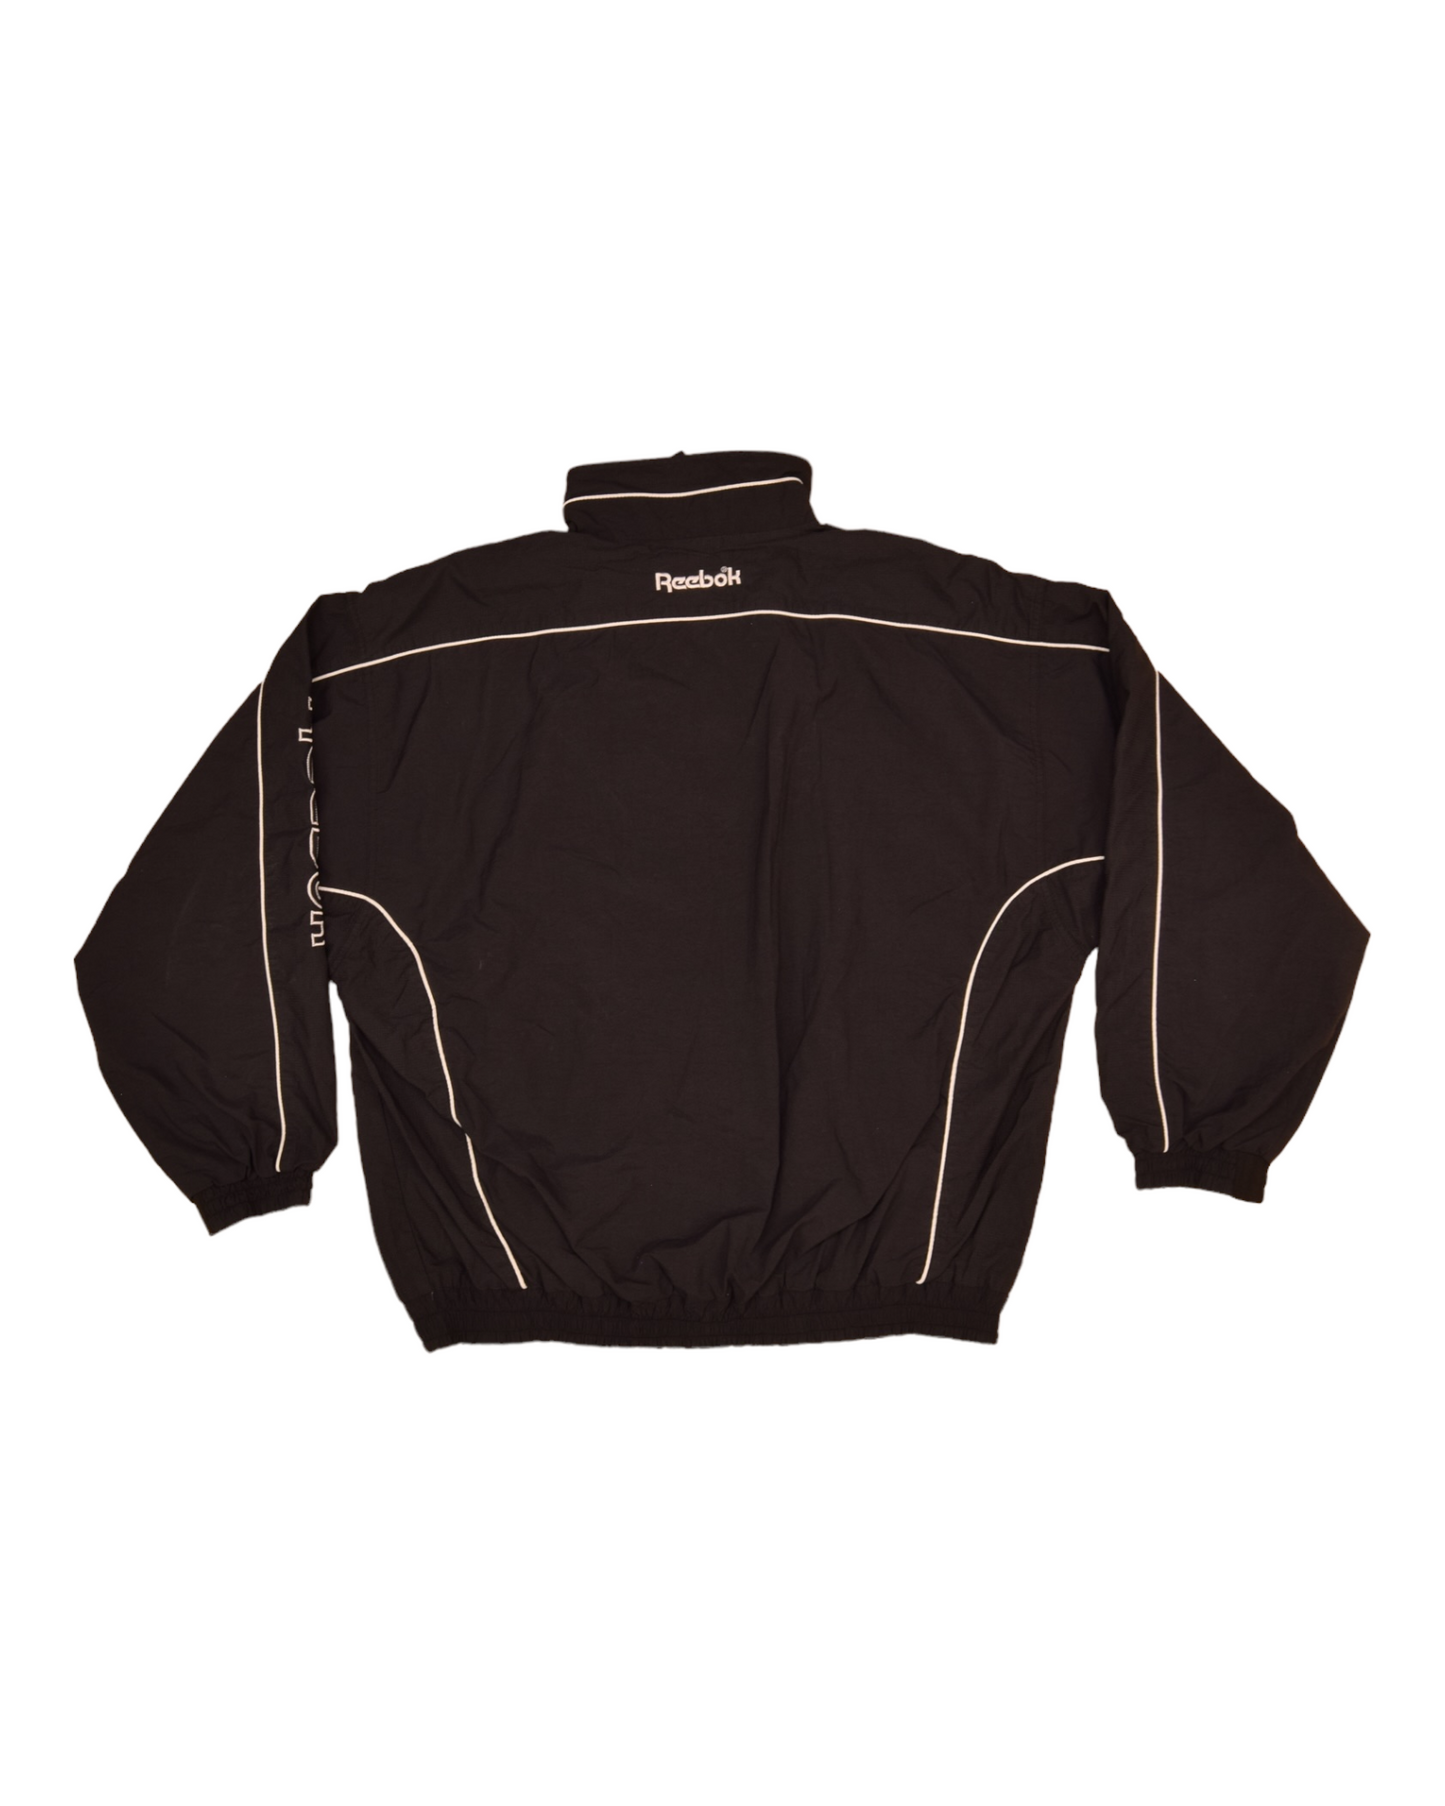 Vintage 90's Reebok Jacket Shell Size XL Black Big Logo